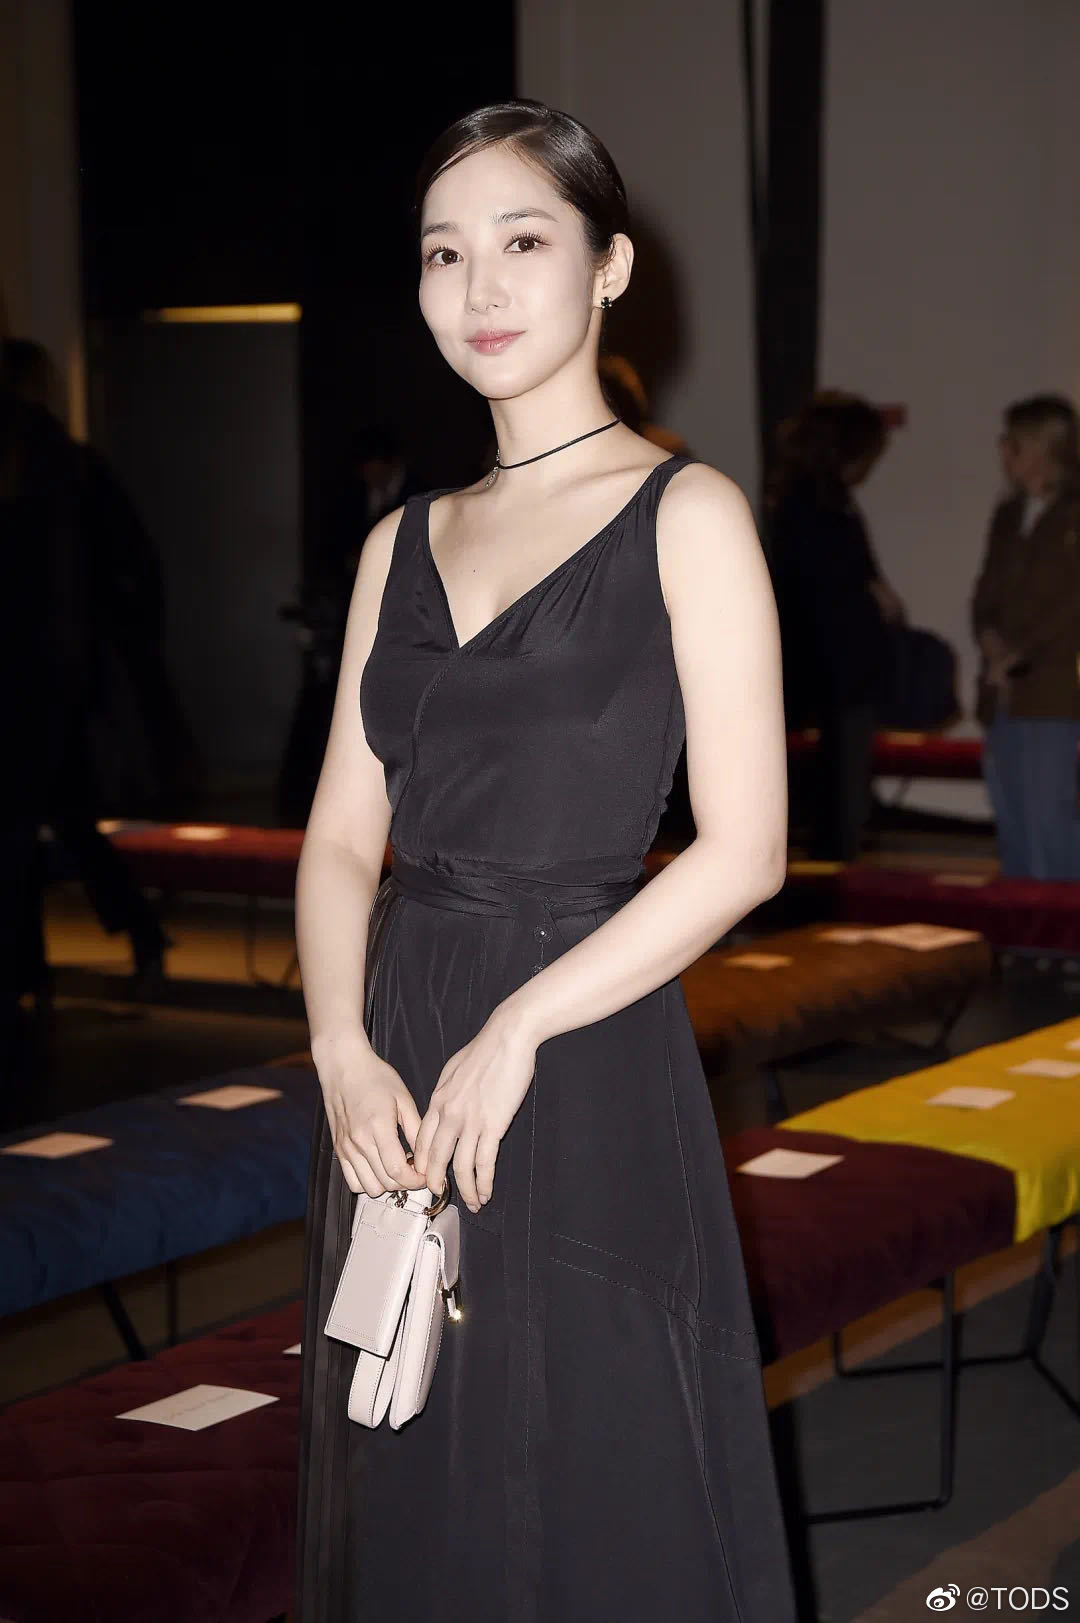 Milan Fashion Week: Park Min Young bỗng hóa một mẩu vì bộ cánh dìm dáng, Han Ye Seul diện váy sến nhưng vẫn đẹp - Ảnh 3.